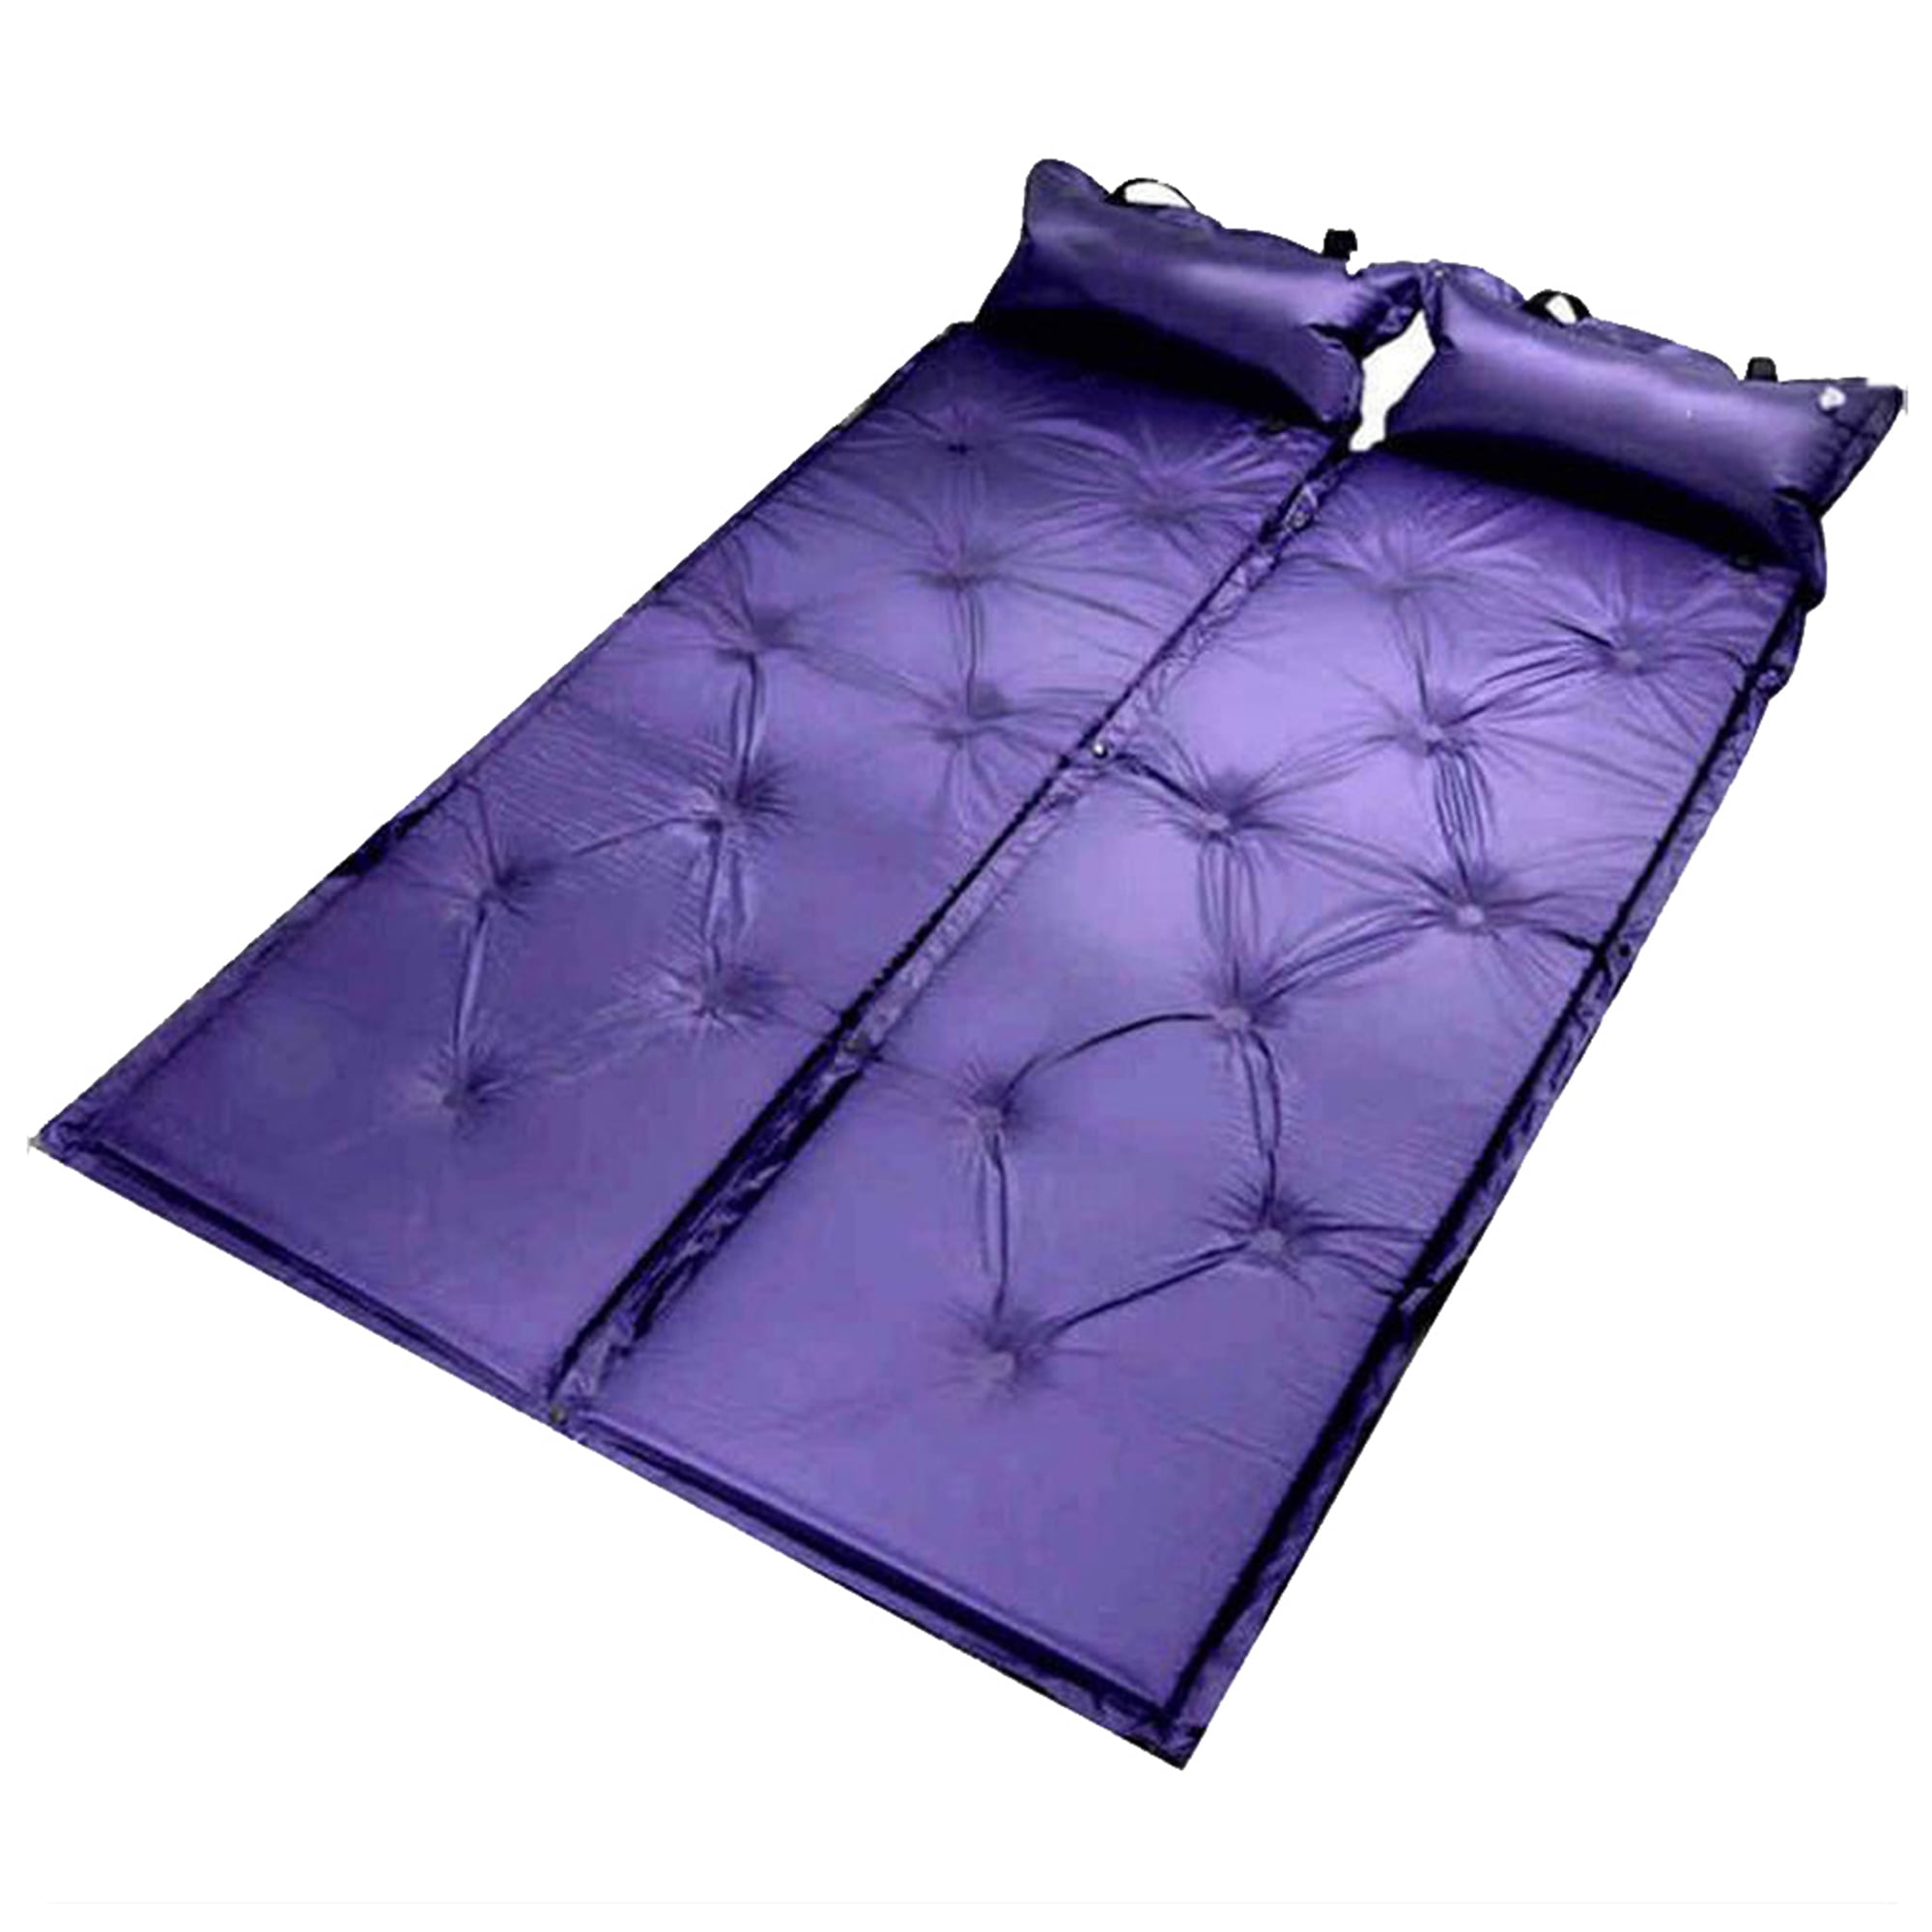 Outdoor Pillow Mattress Inflatable Sleeping Mat